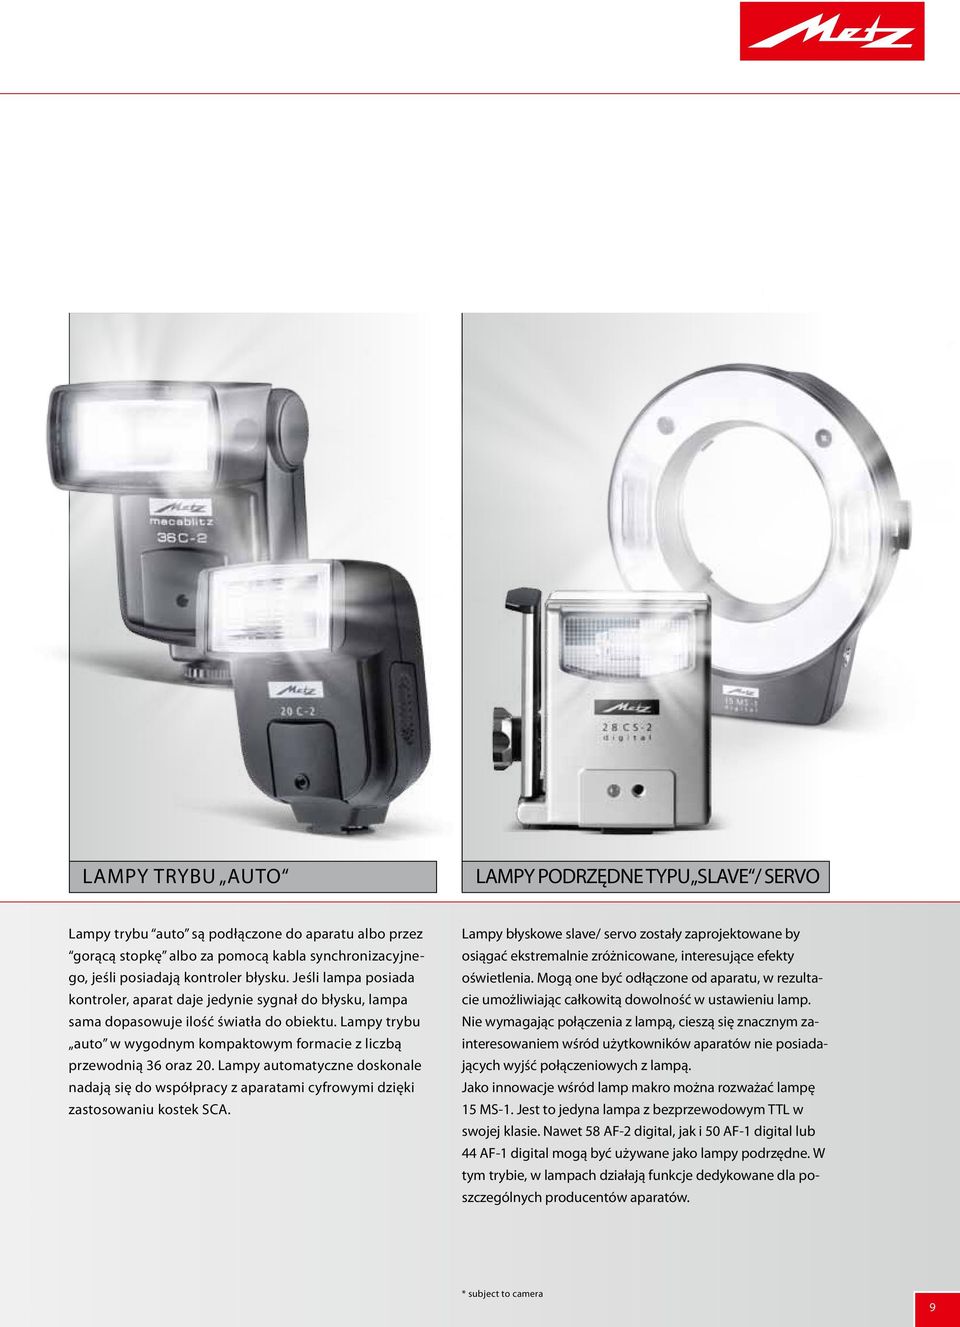 Lampy automatyczne doskonale nadają się do współpracy z aparatami cyfrowymi dzięki zastosowaniu kostek SCA.